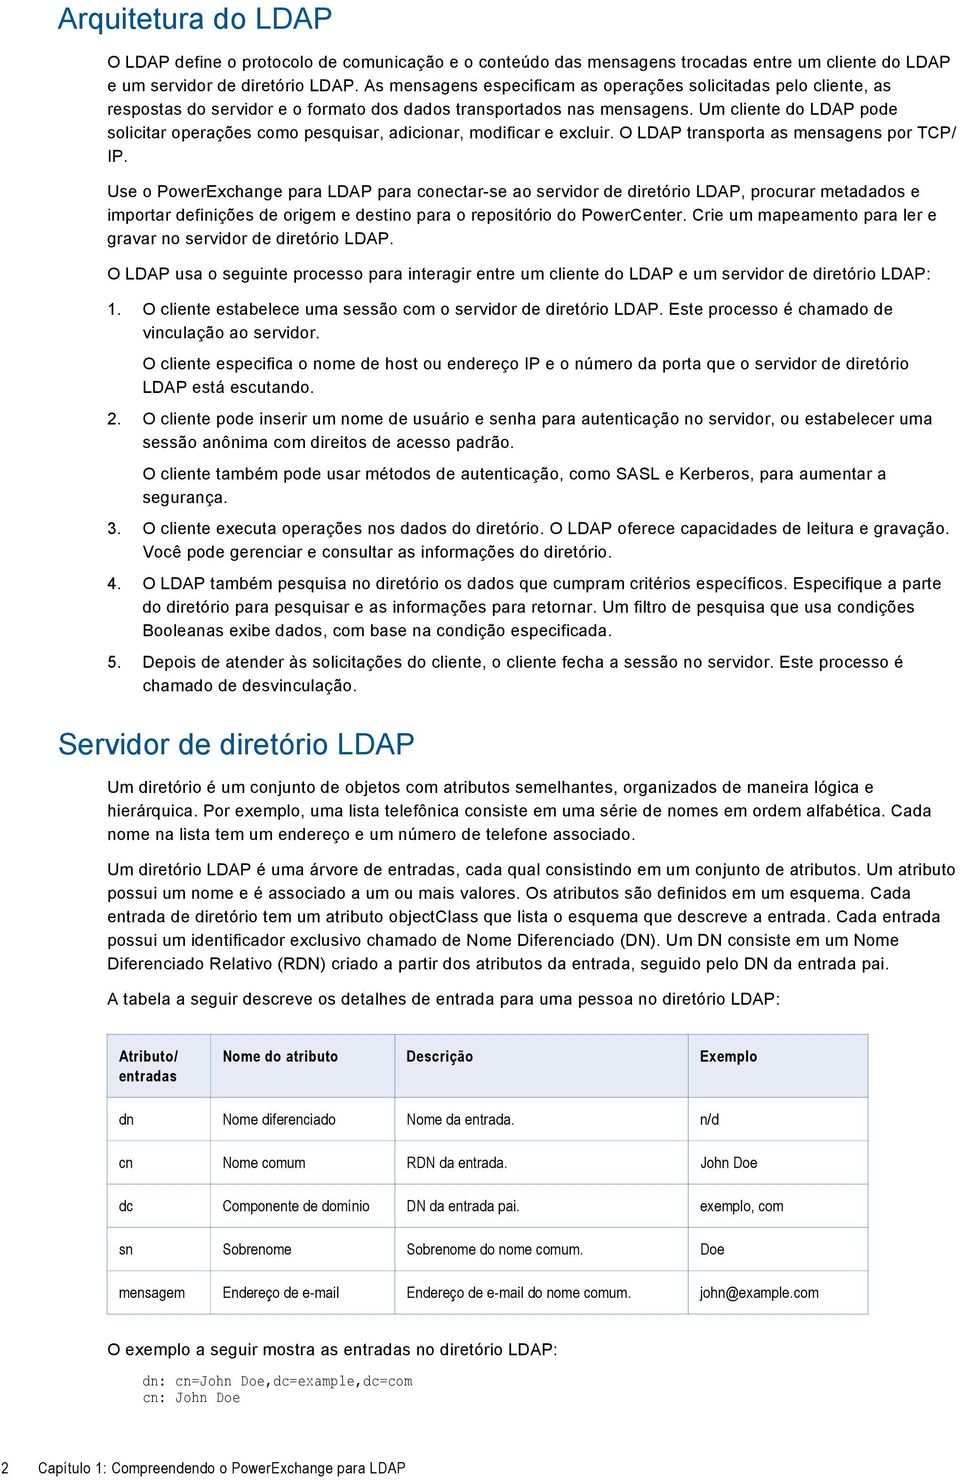 Um cliente do LDAP pode solicitar operações como pesquisar, adicionar, modificar e excluir. O LDAP transporta as mensagens por TCP/ IP.